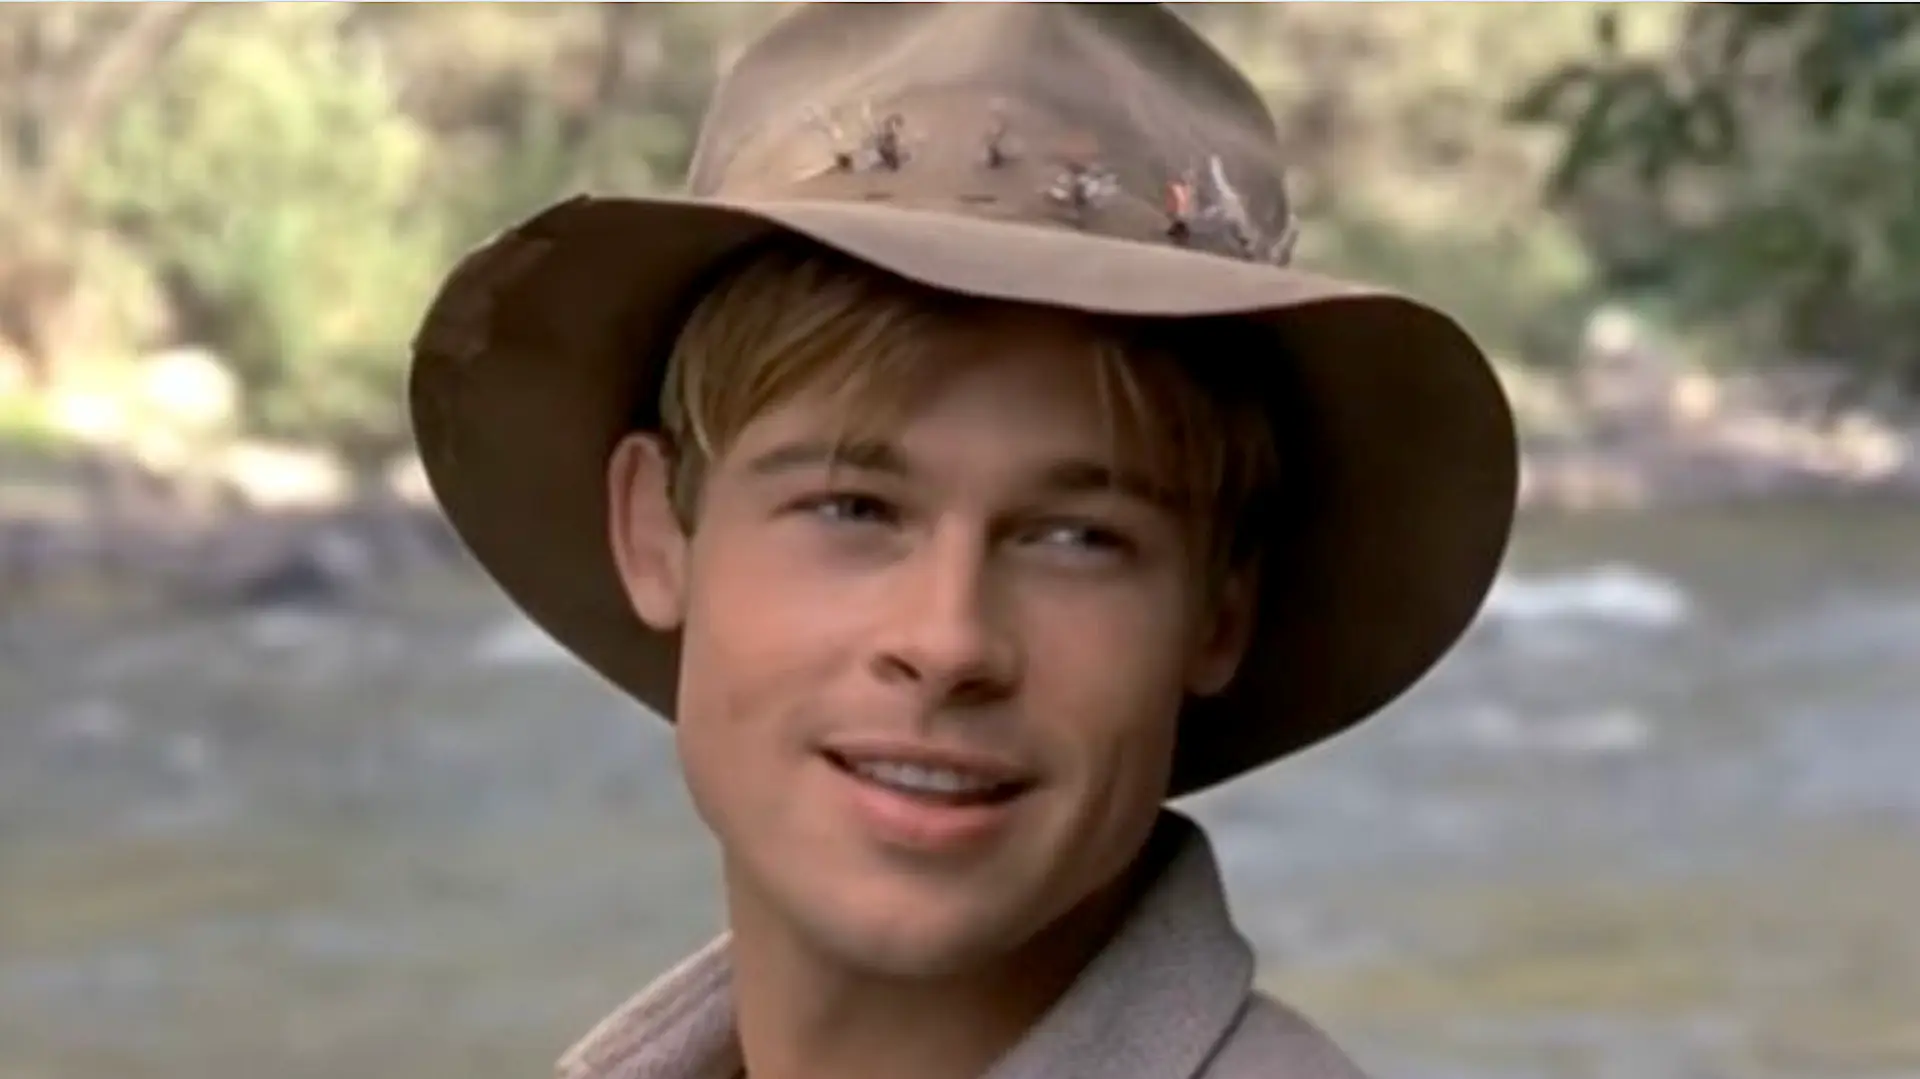 Brad Pitt em "A River Runs Through It" — foi há 30 anos
